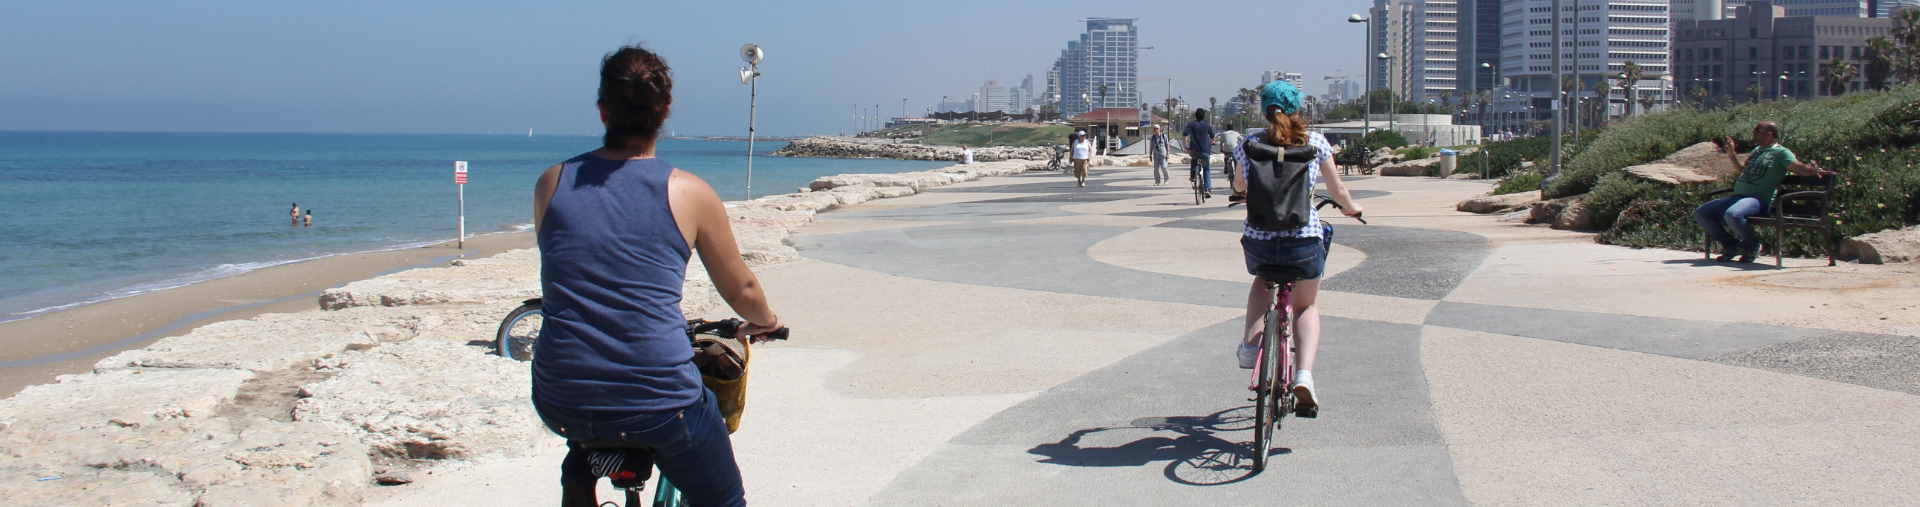 רוכבים על שפת הים בסיור אופניים בתל אביב